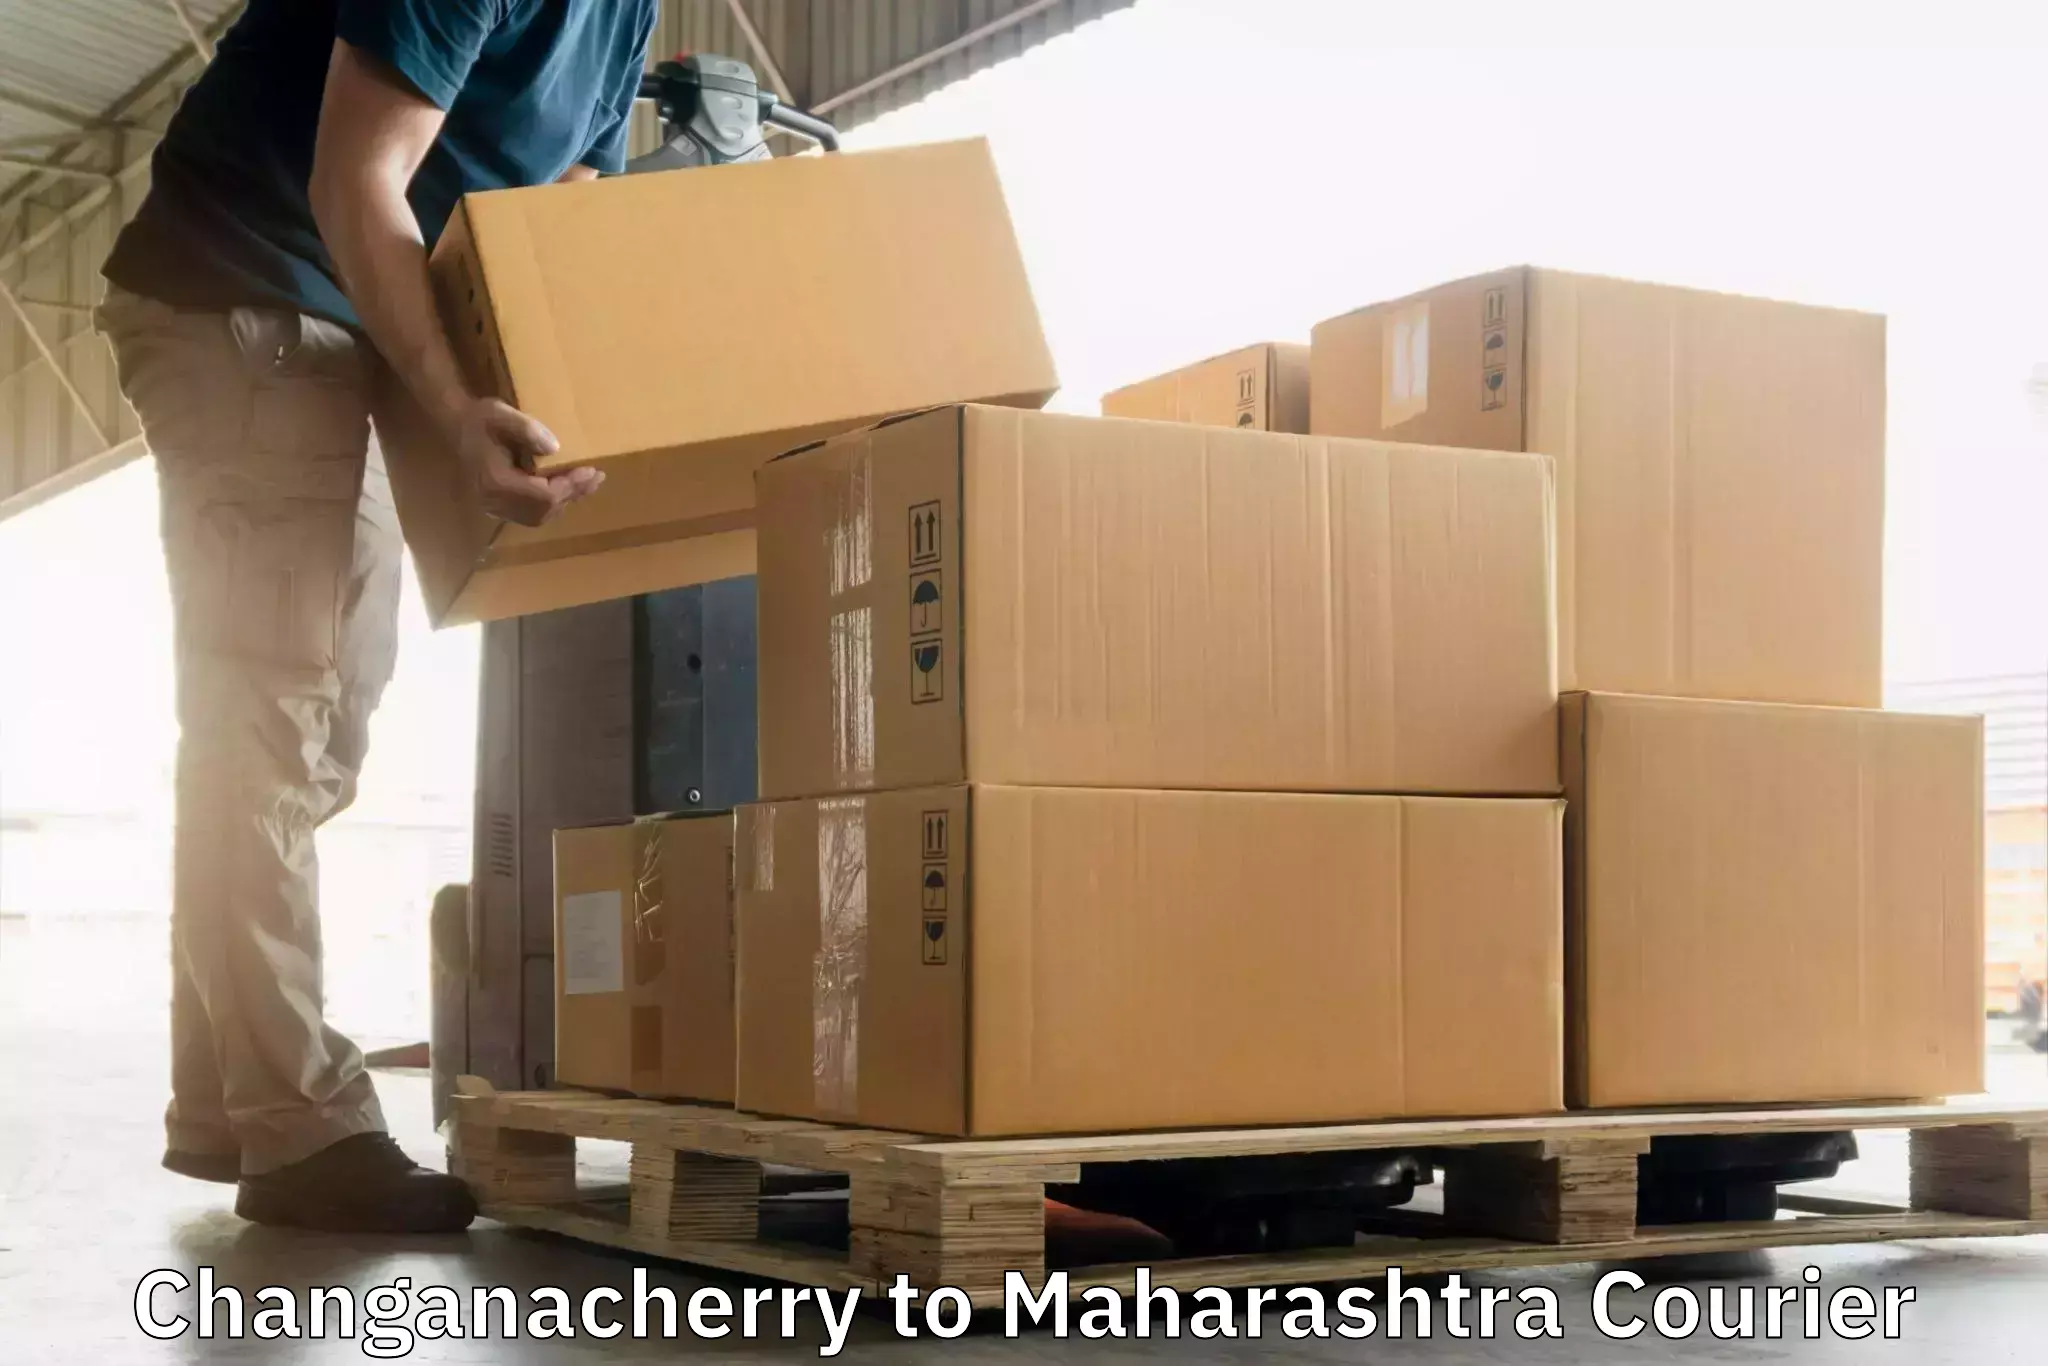 Supply chain efficiency Changanacherry to Mahabaleshwar